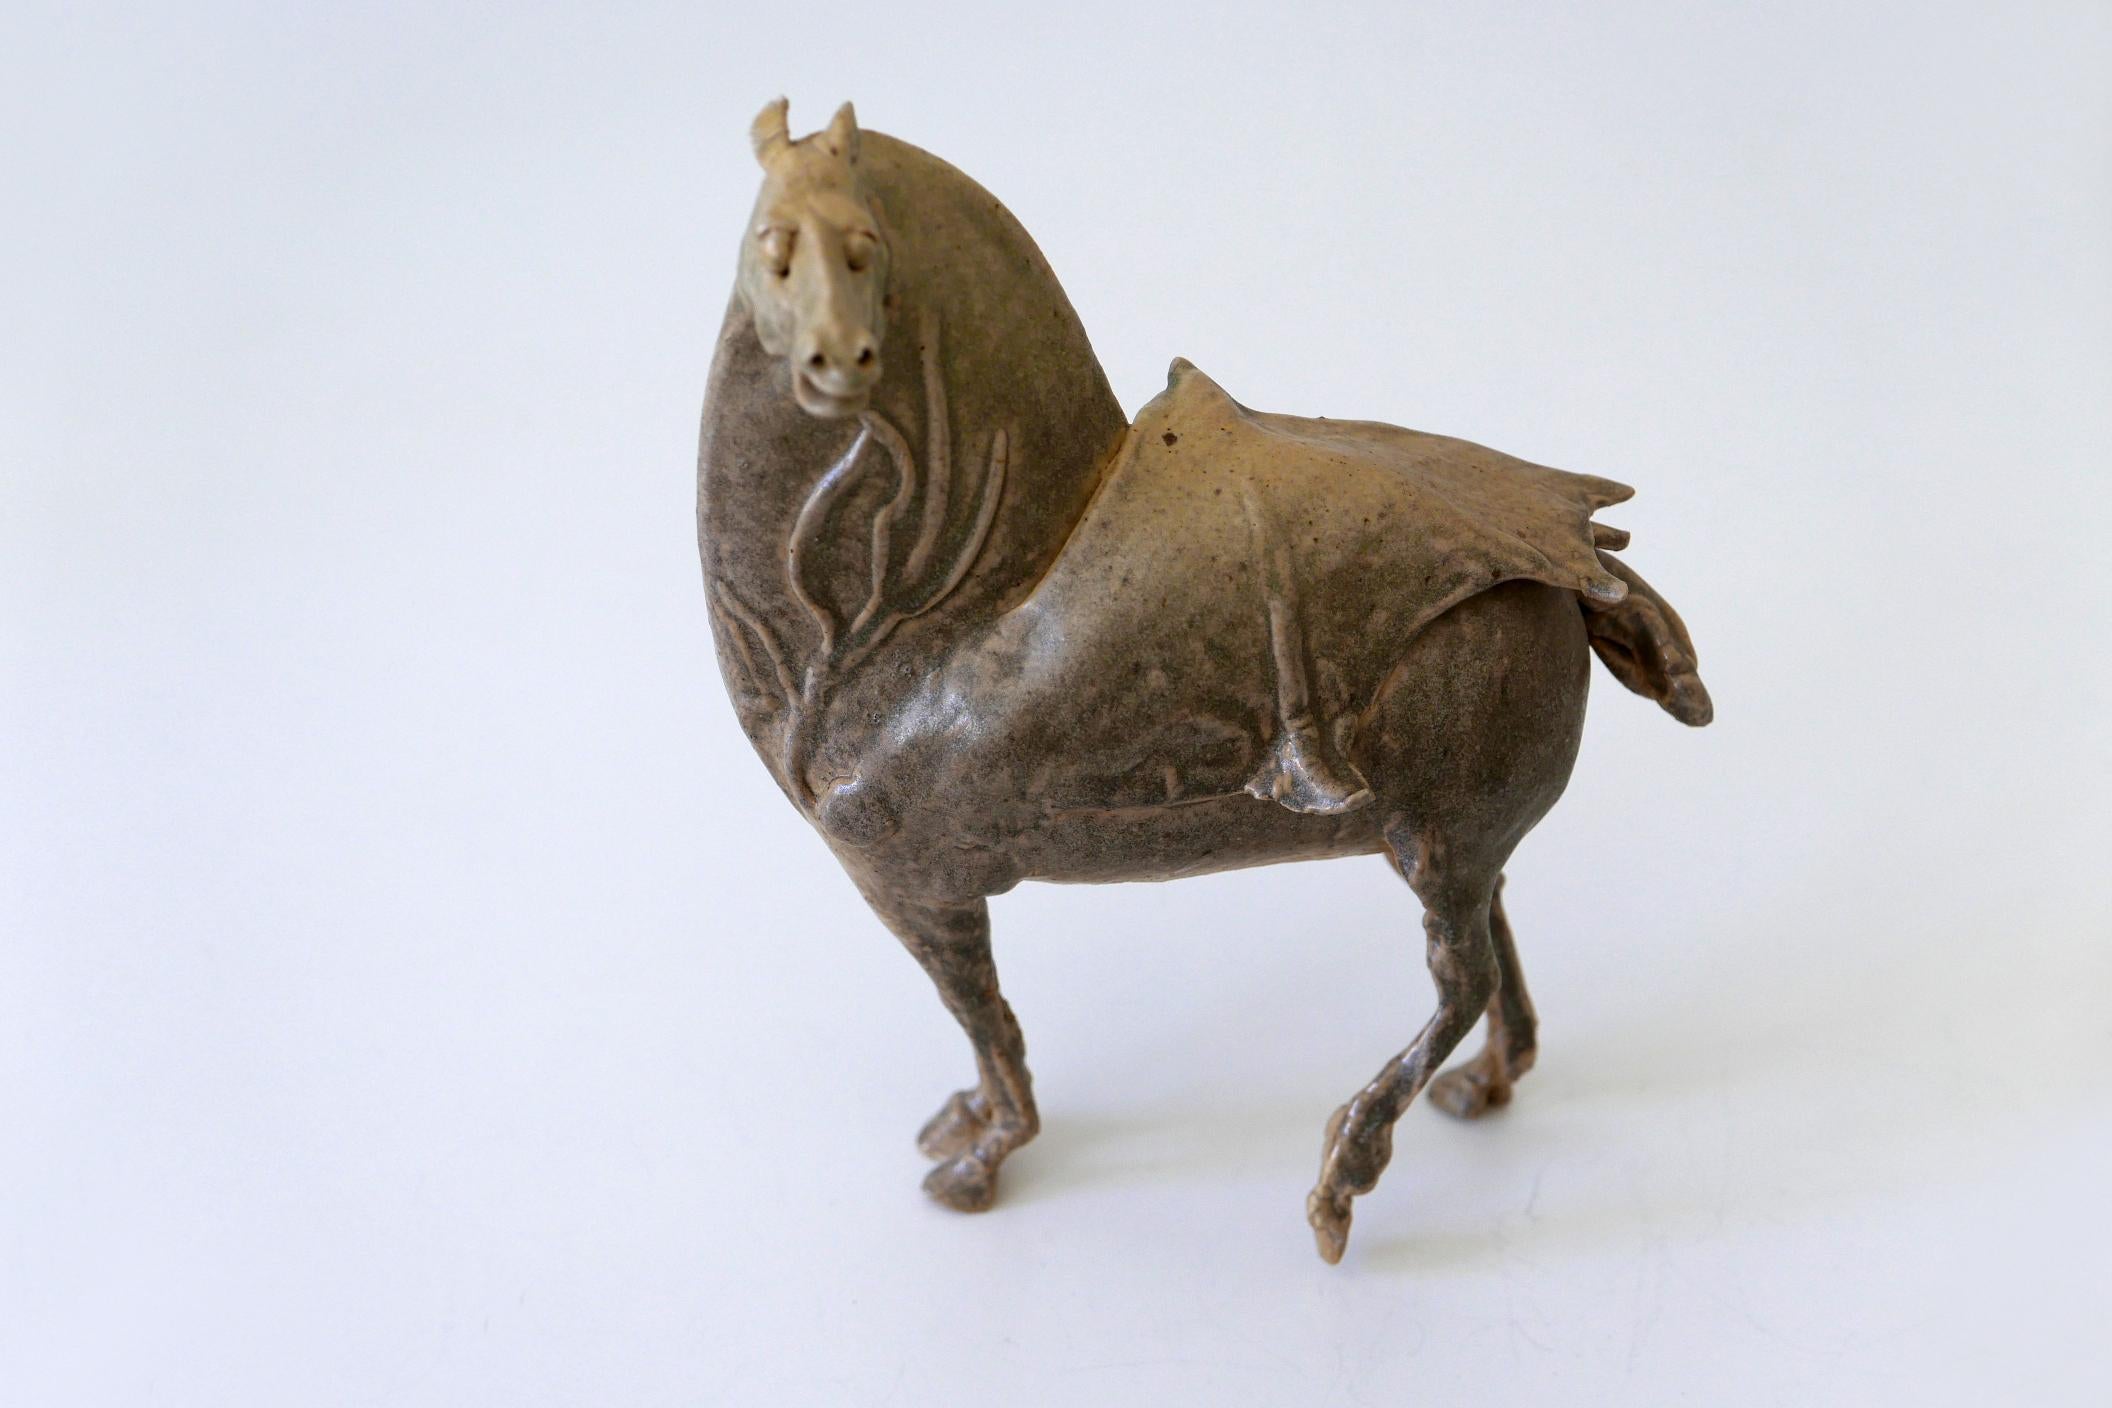 Hübsche glasierte Keramikfigur eines Pferdes des deutschen Künstlers Harro Frey, (1941-2011). Sehr hohe künstlerische Qualität.

Abmessungen: 
H 8.66 in. x B 7.08 in. x T 3.34 in. / H 22 cm x B 18 cm x T 8,5 cm

Guter Zustand. Kein Schaden.